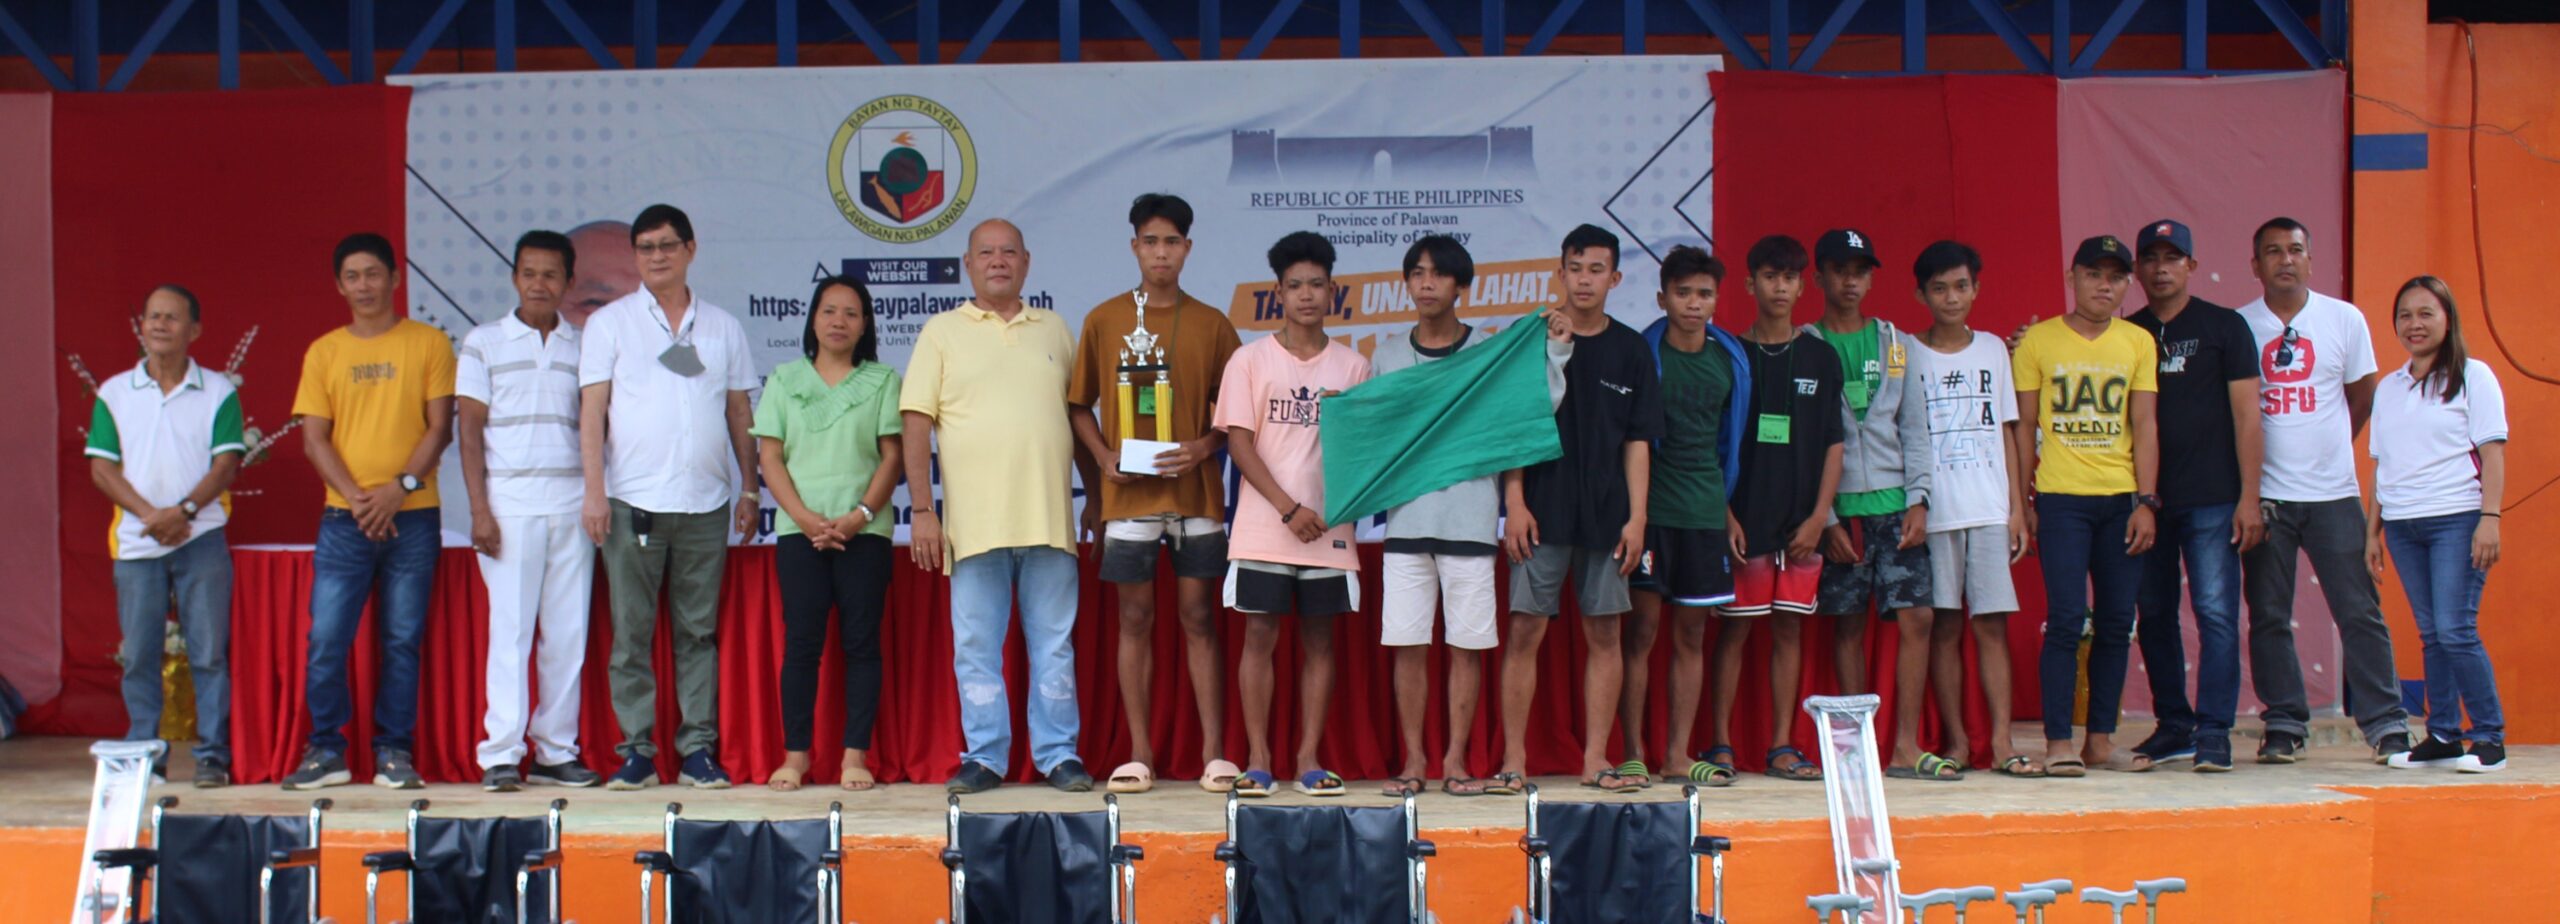 Unang Youth Camp at Youth Sports Program, Pinuno ng Enerhiya ng mga Kabataan